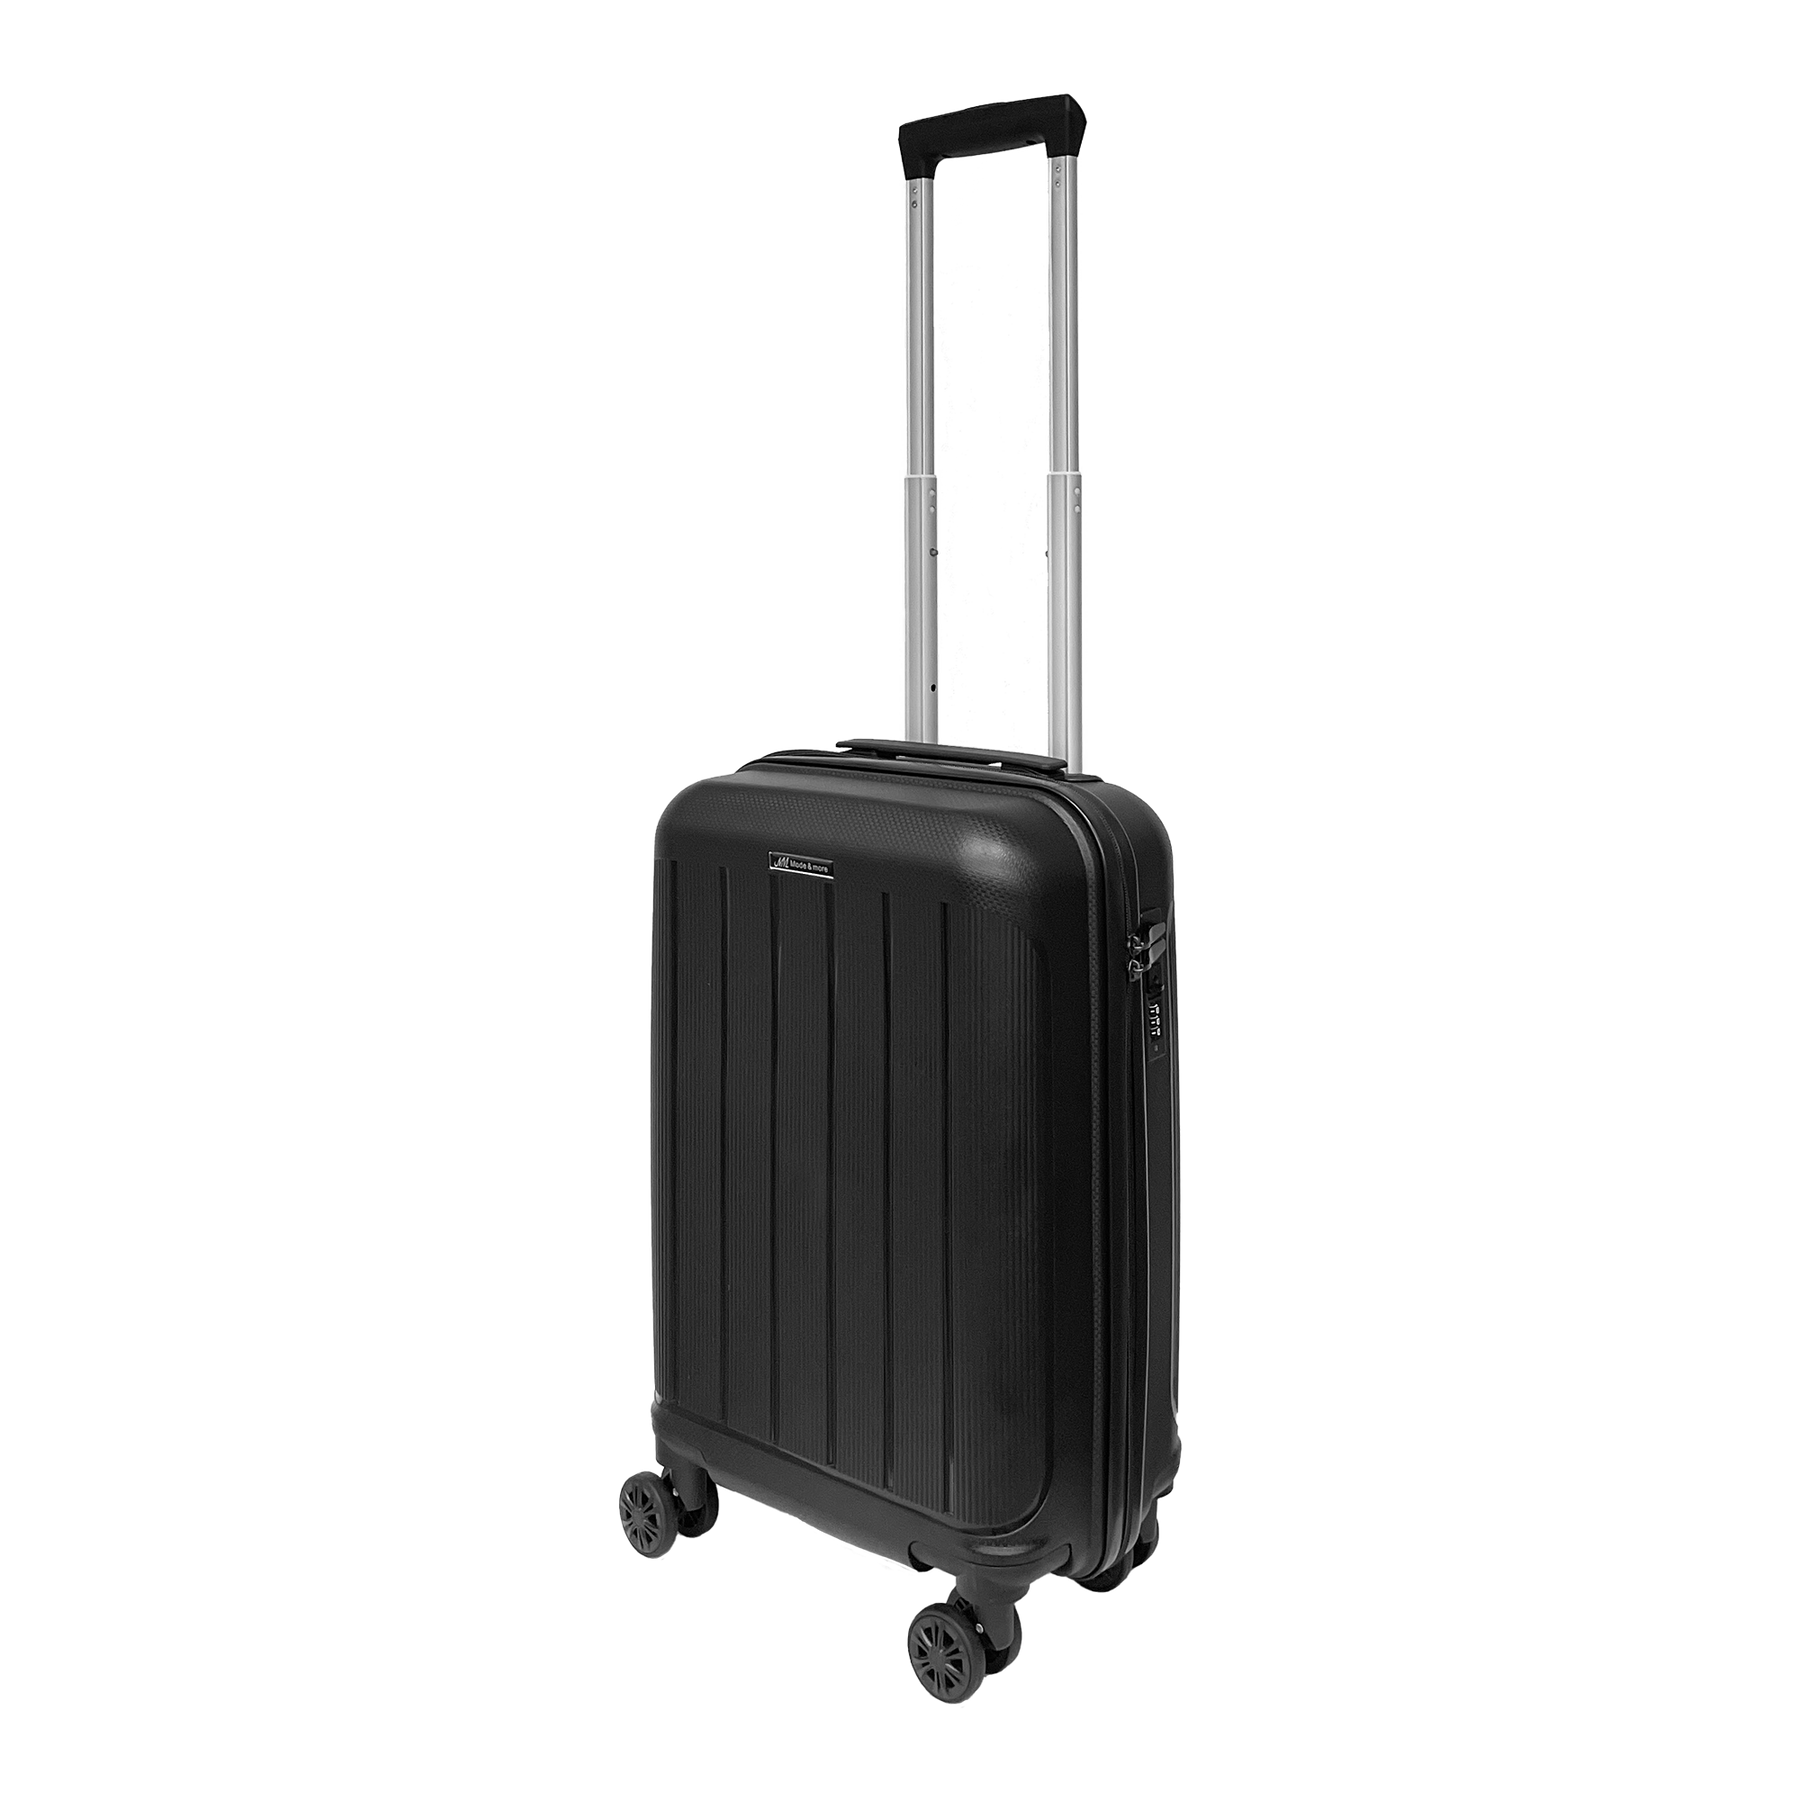 Rankinis bagažas iš lengvo minkšto polipropileno 55x36x25cm su TSA pakabinamu spyna labai lengvas aukštos kokybės vežimėlis